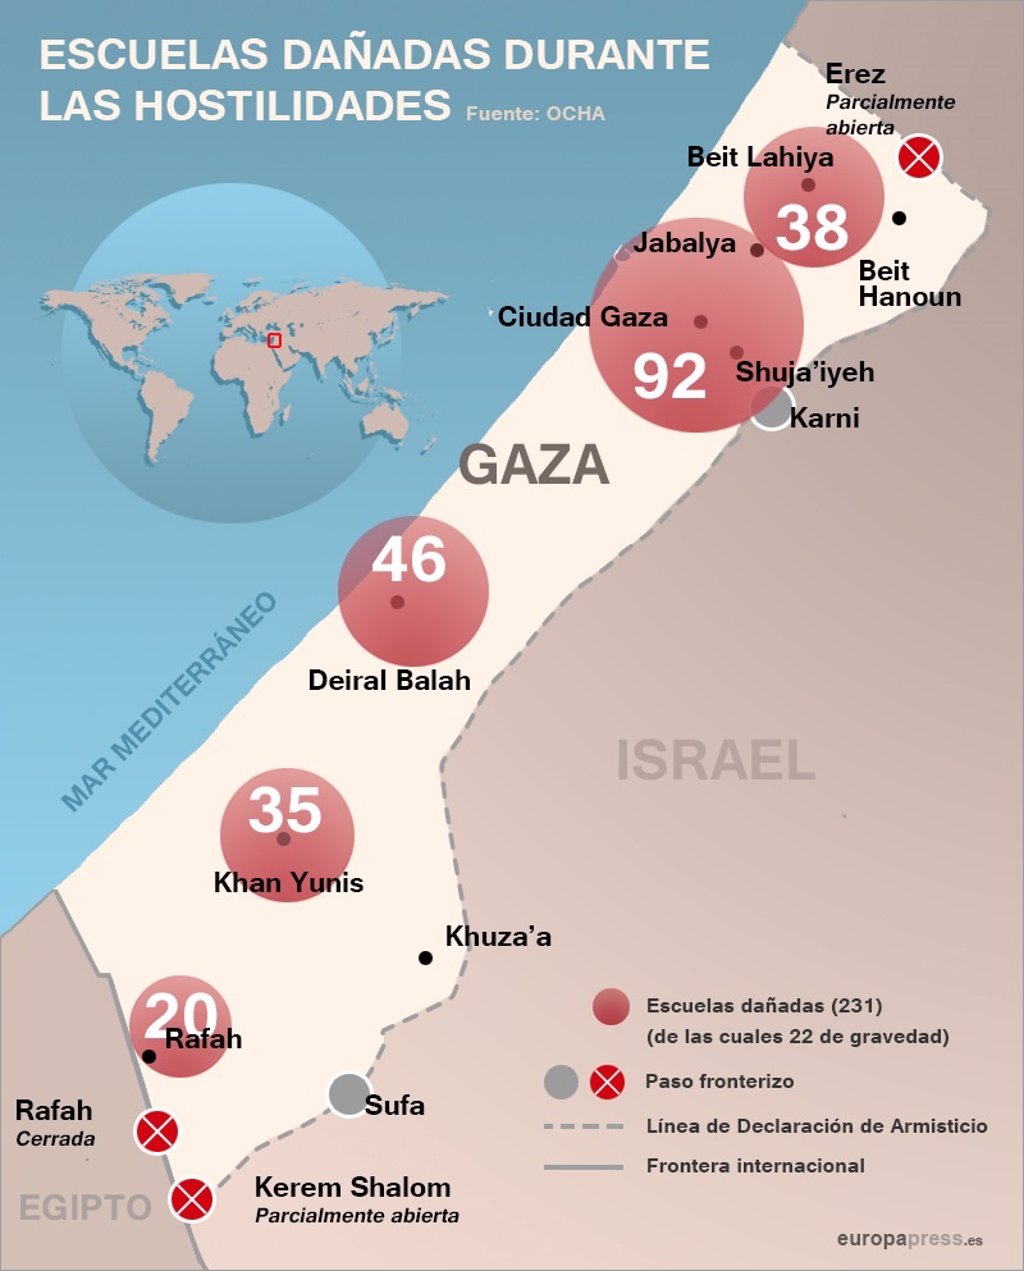 El conflicto palestinoisraelí en Gaza, en cifras